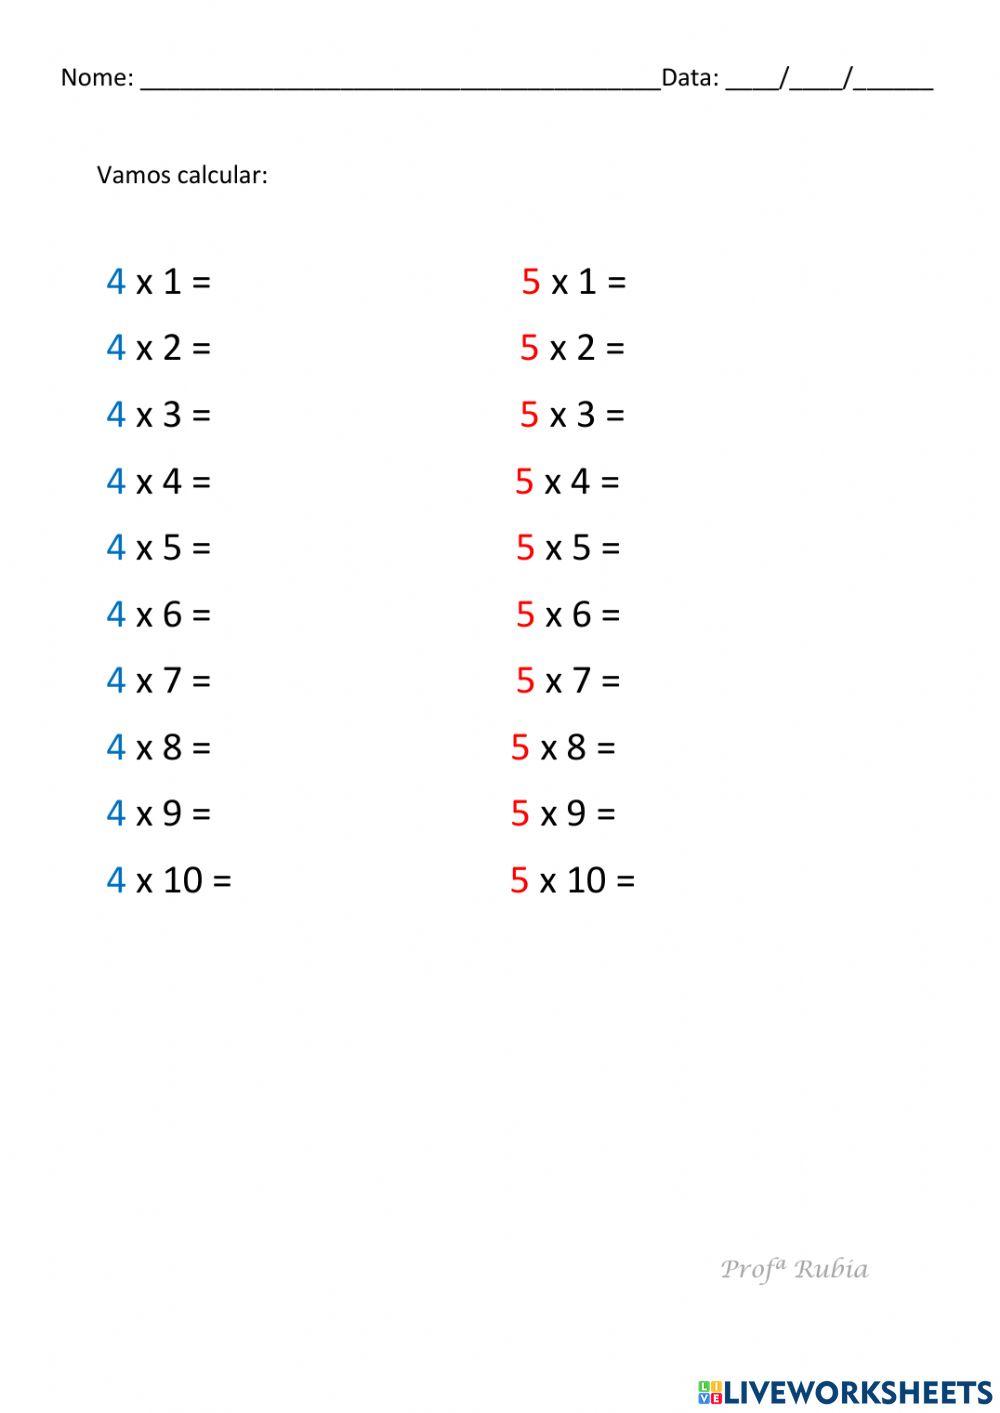 Quiz da Tabuada do 2 ao 9  Tabuada de Multiplicação do 2 ao 9 [QUIZ DE  MATEMÁTICA] 